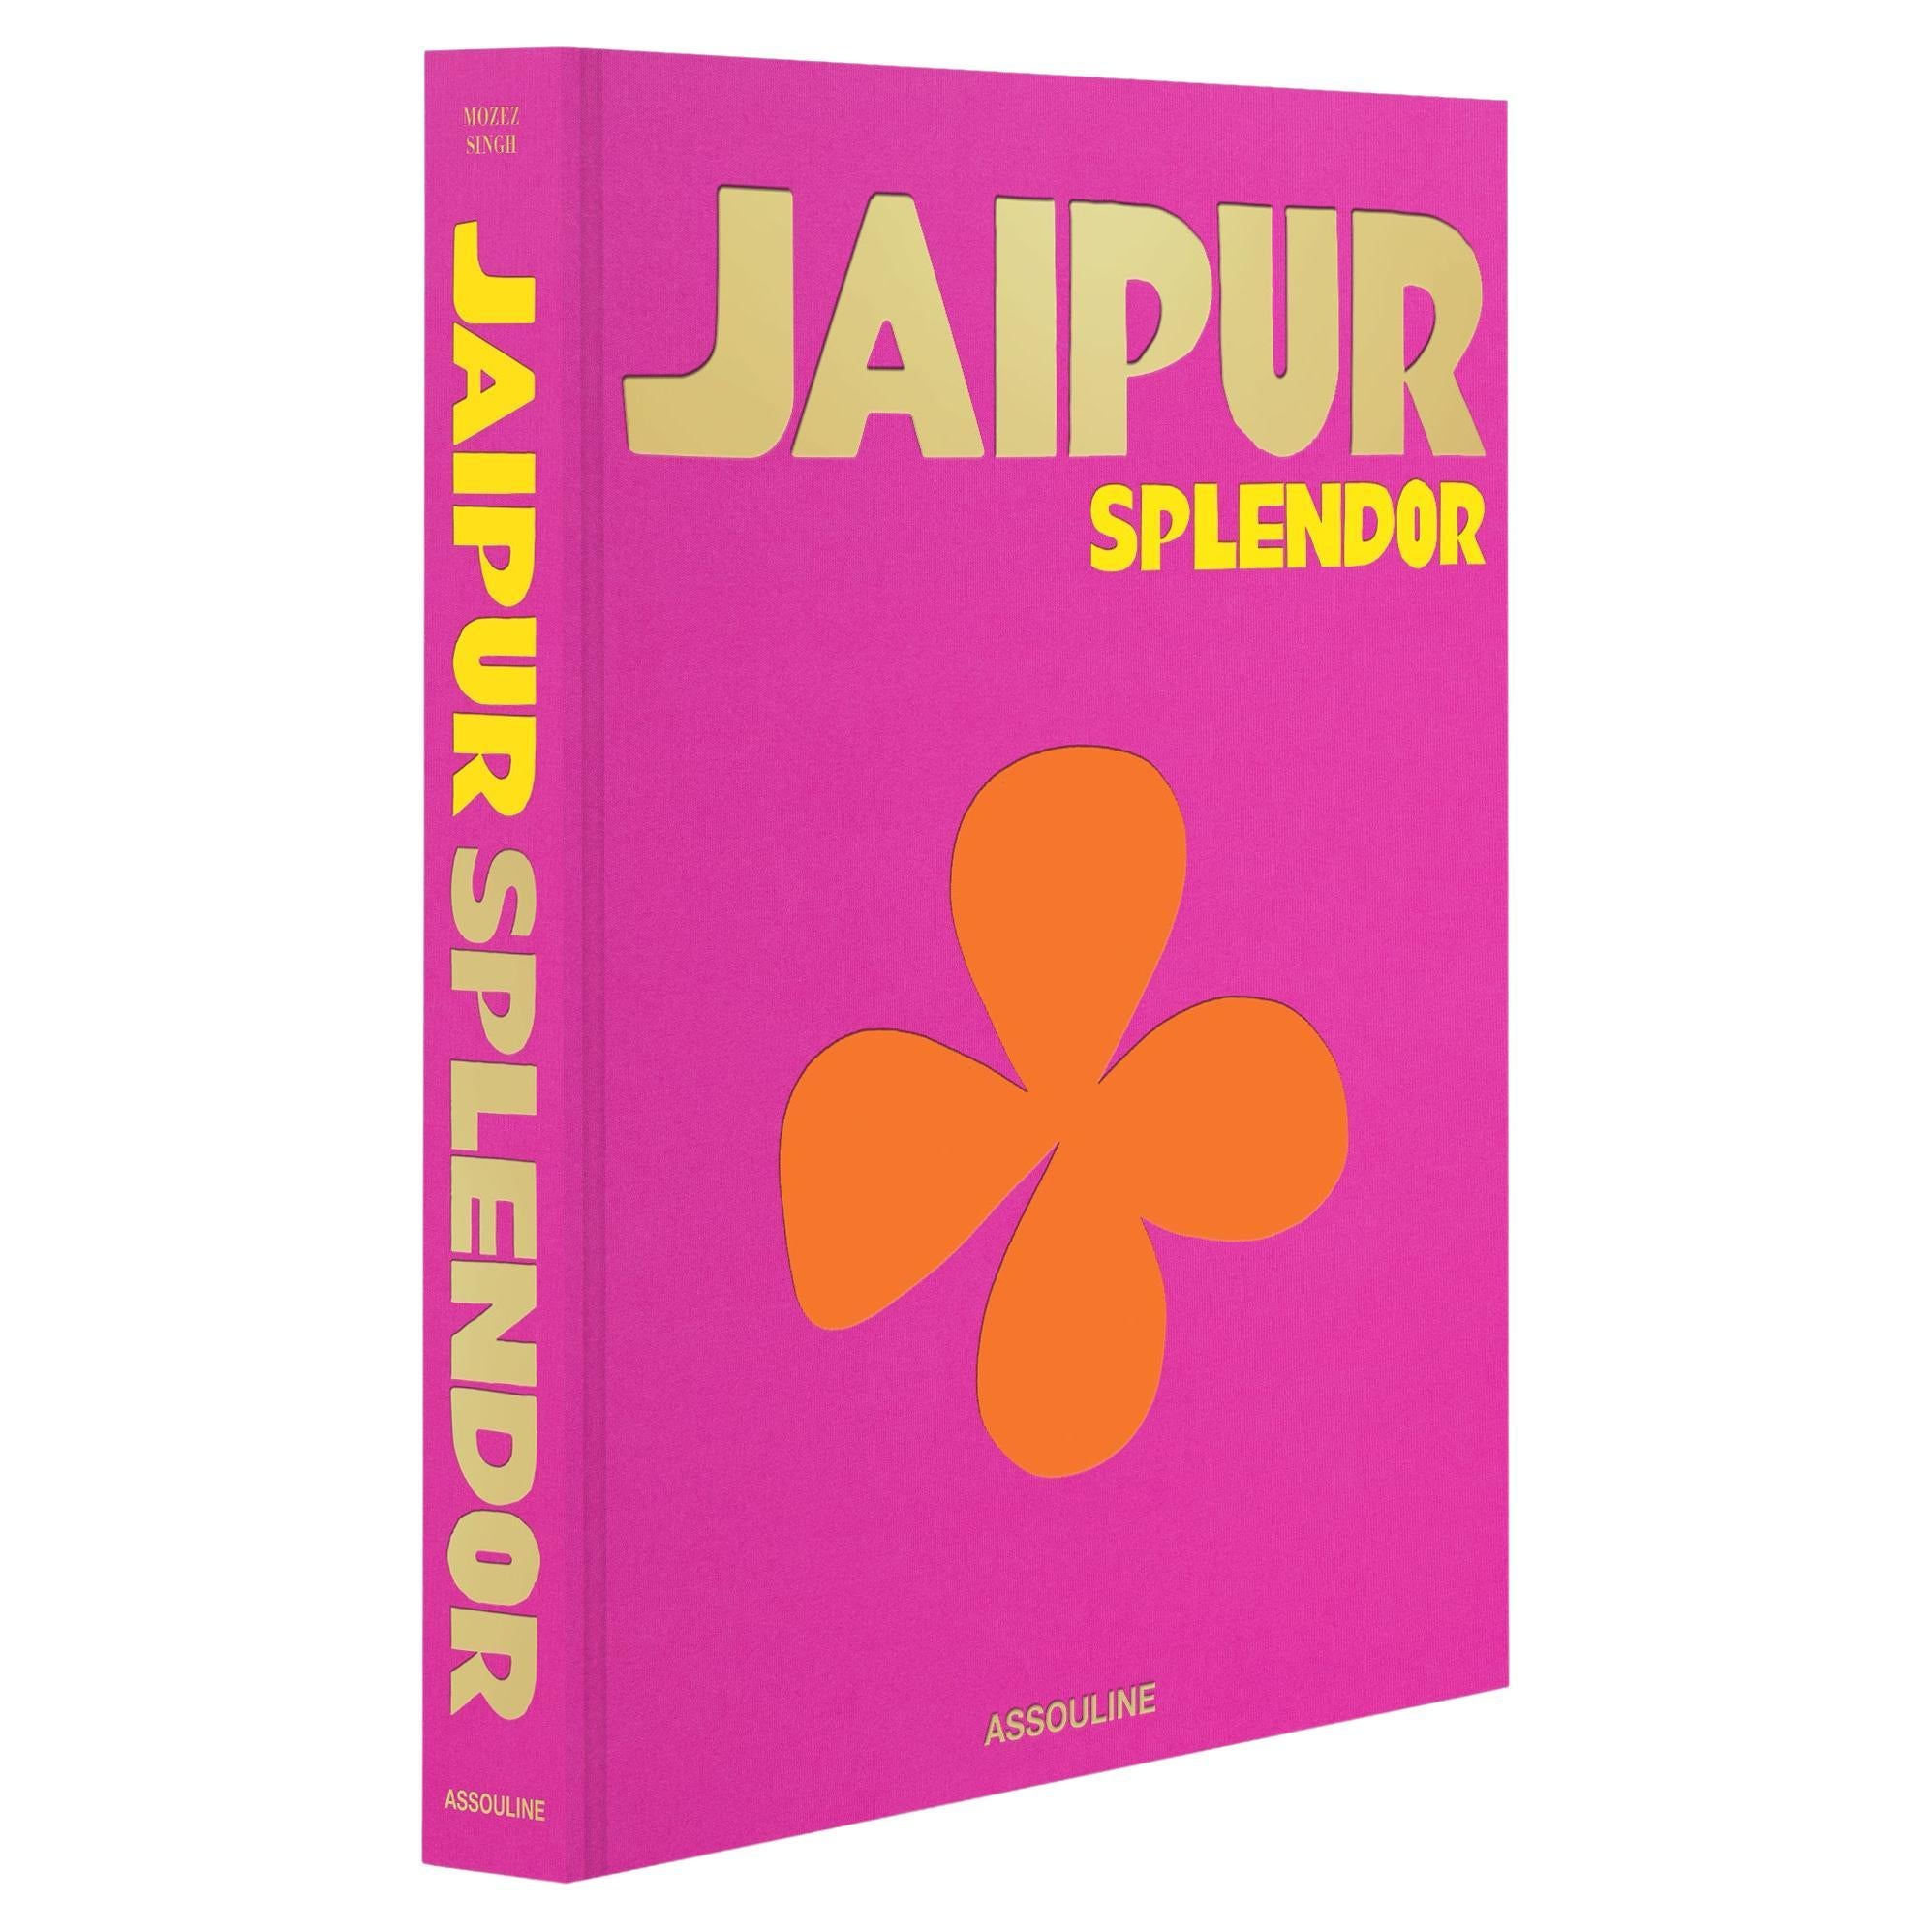 Jaipur Splendor For Sale